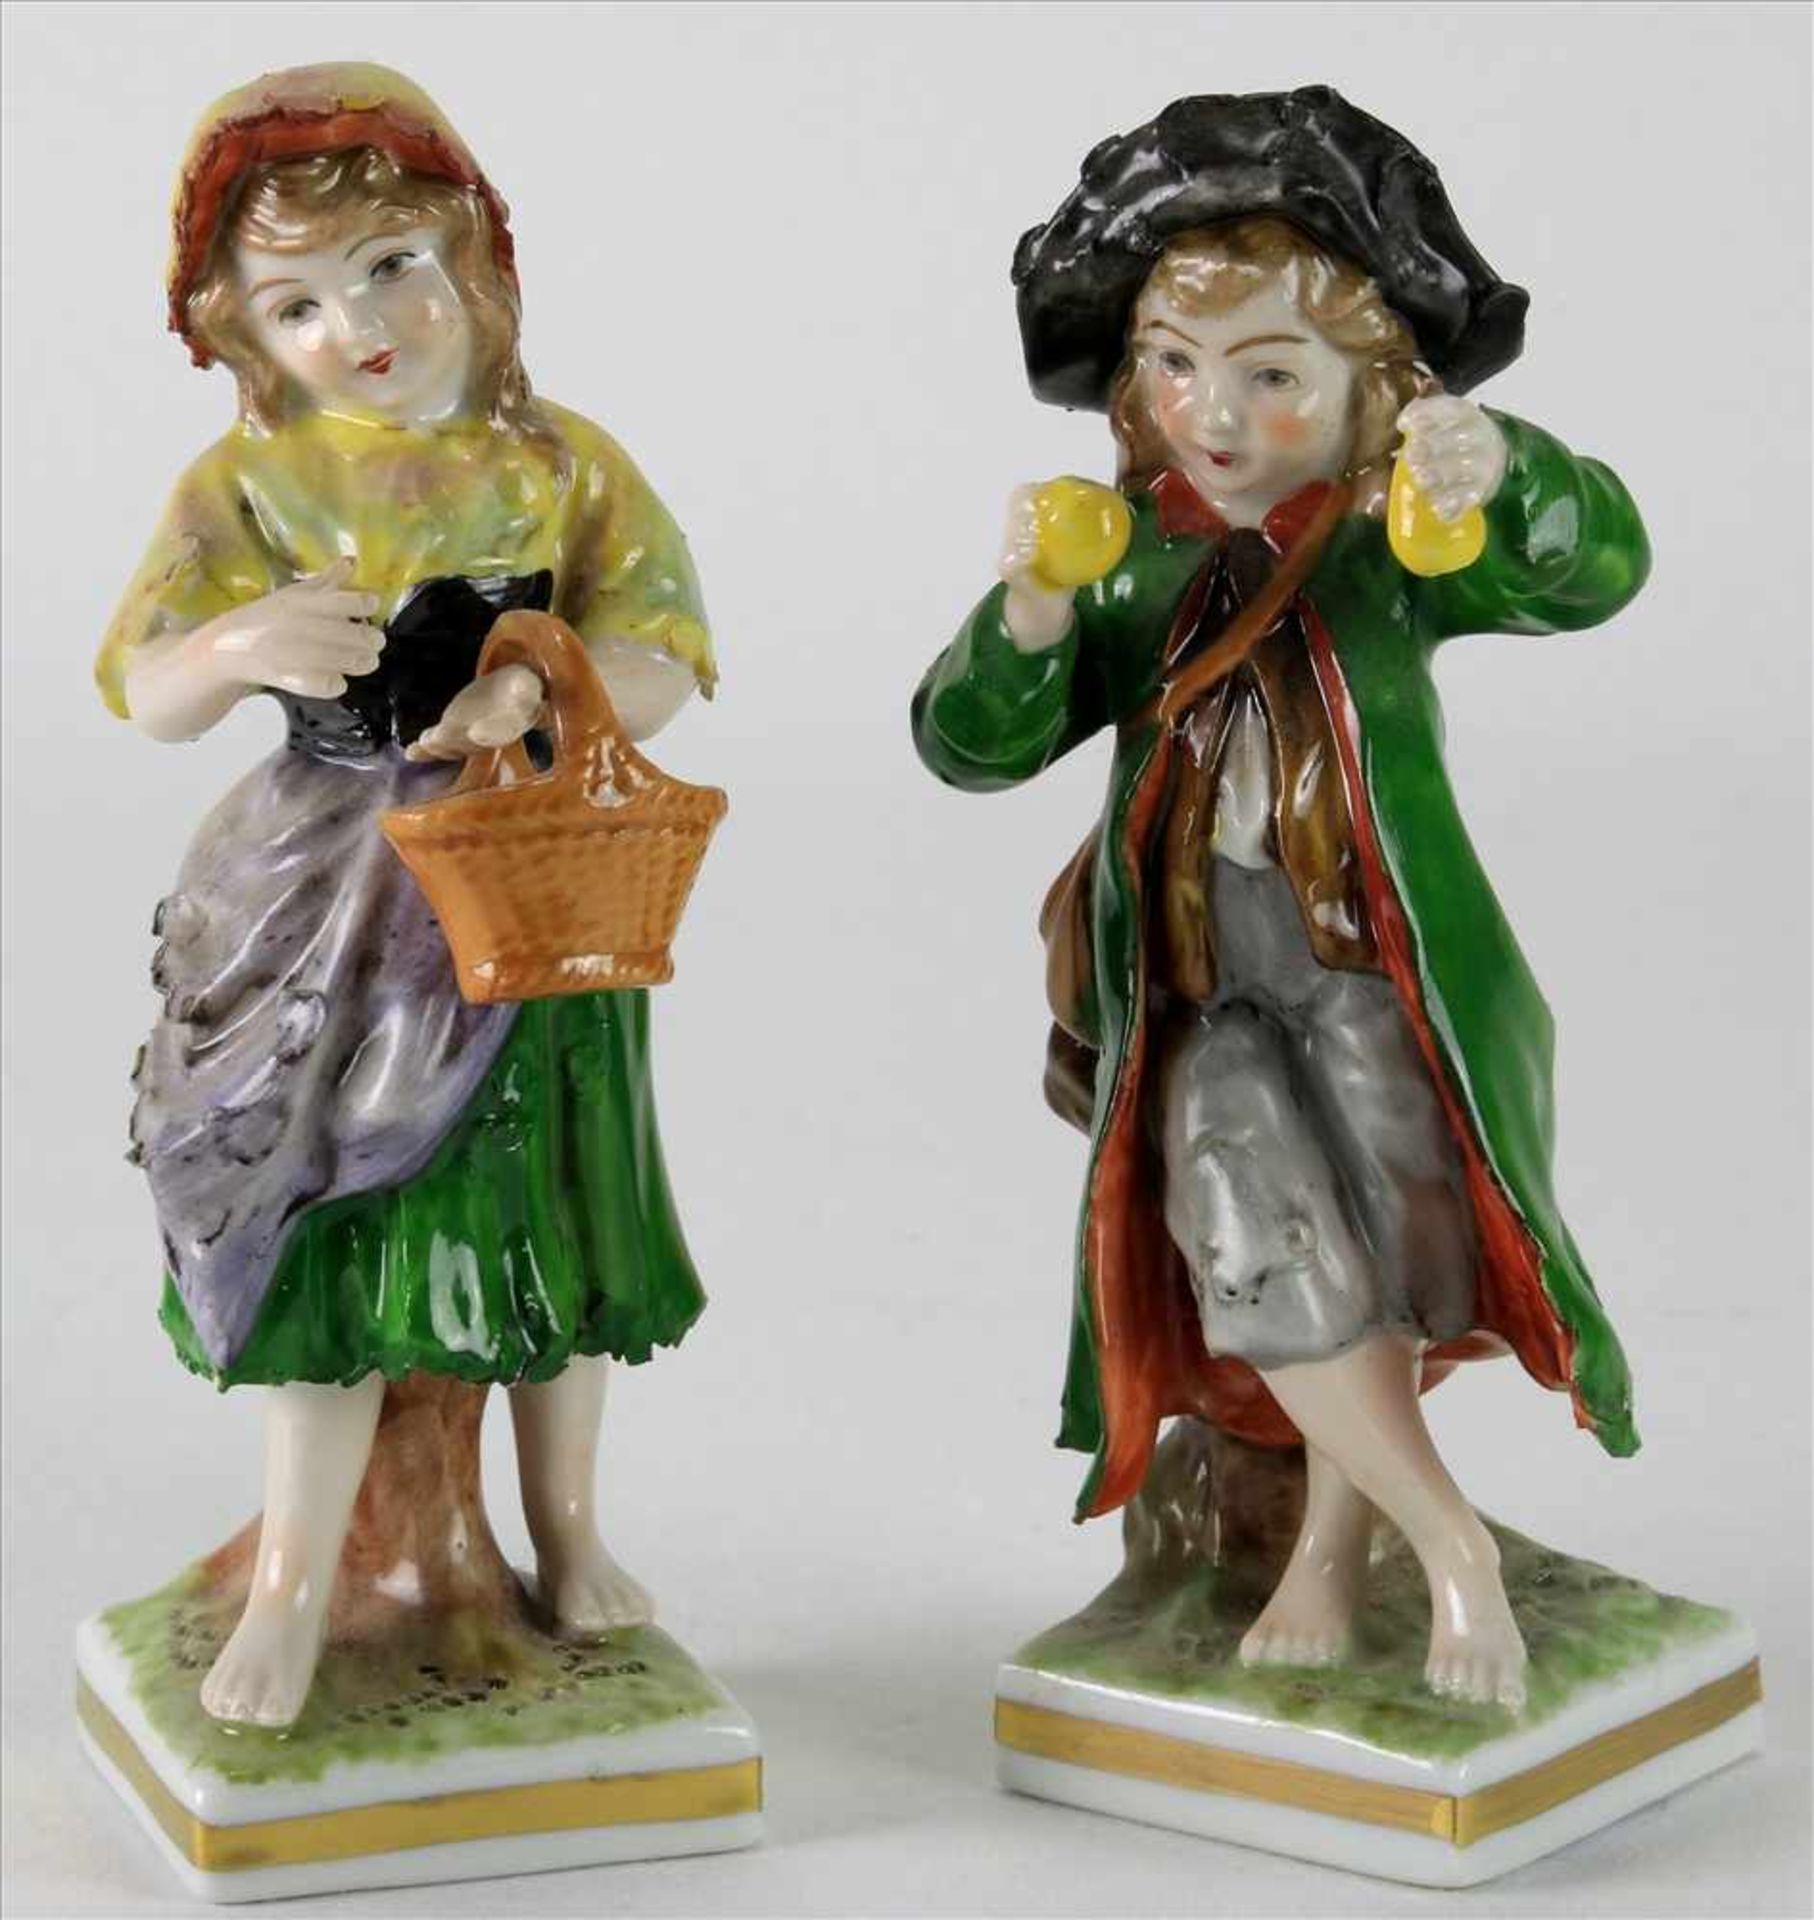 Paar PorzellanfigurenRudolstadt um 1900. Junge mit Äpfeln und Mädchen mit Korb. Polychrome Staffage.